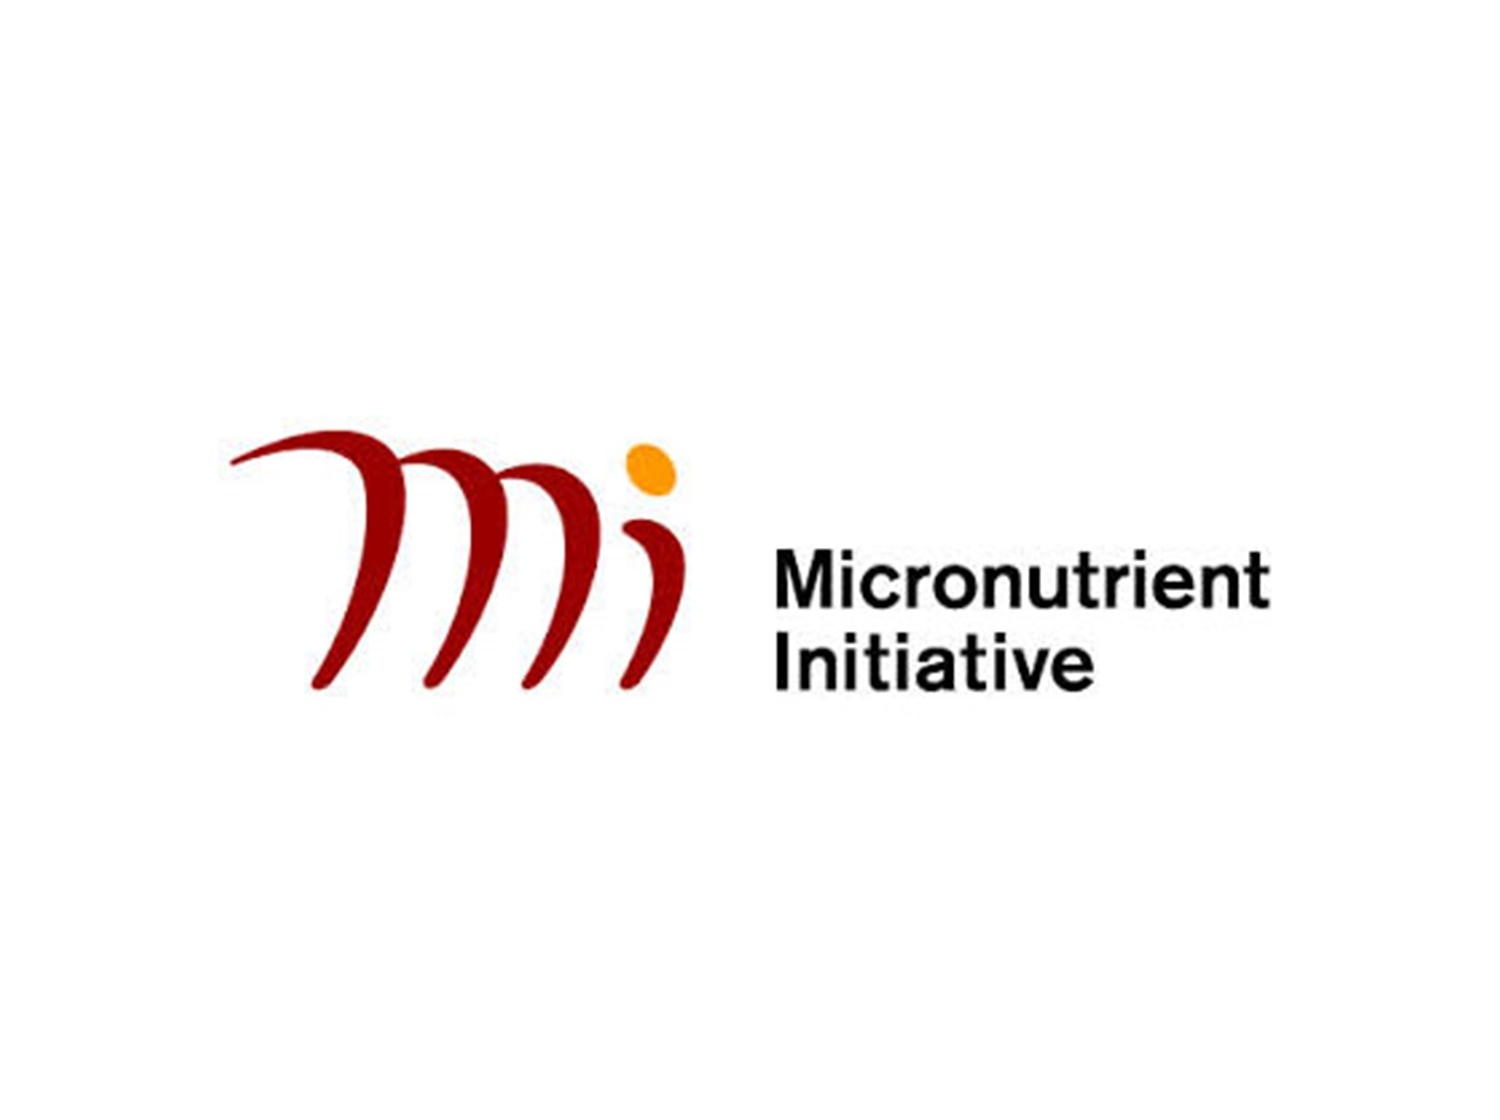 Micronutrient pfm client